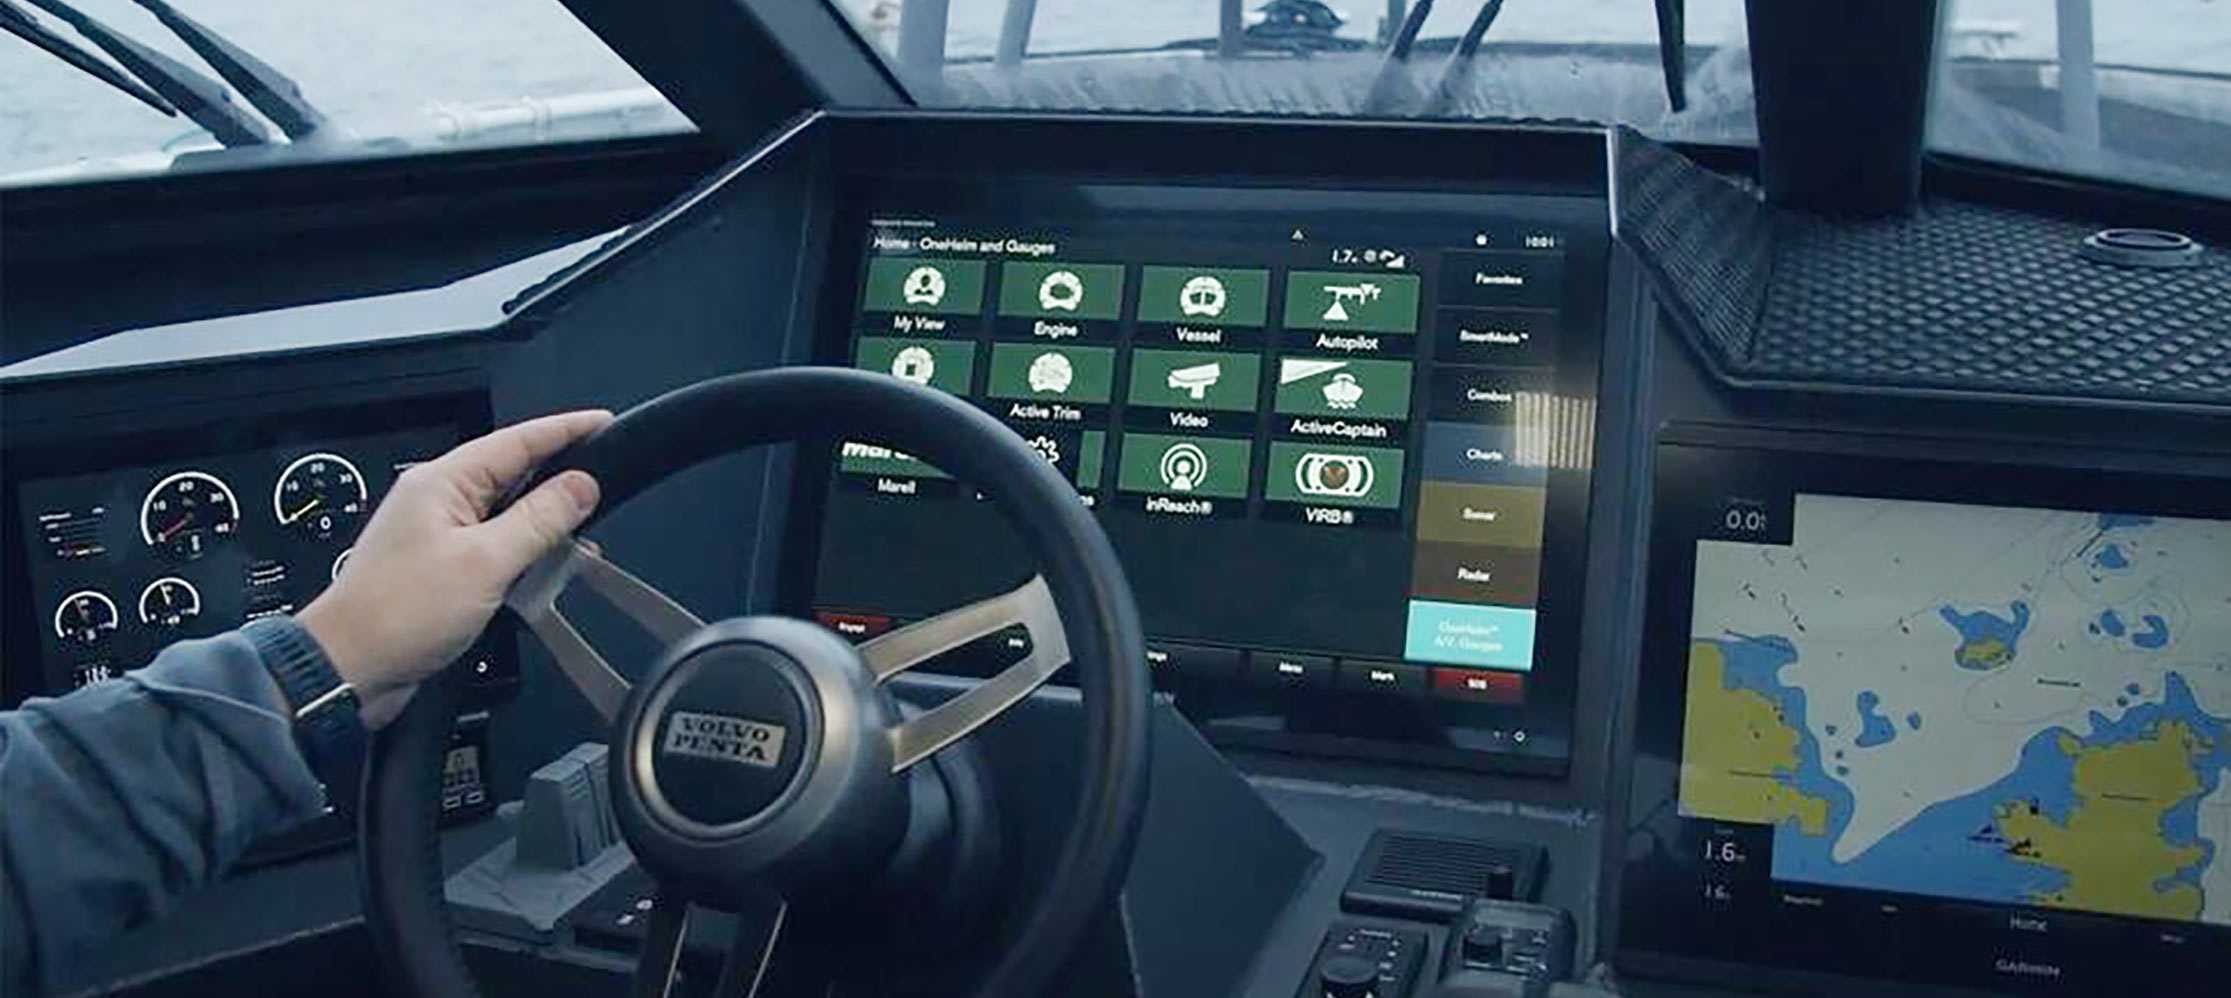 Pantallas táctiles multifunción Volvo Penta Glass Cockpit